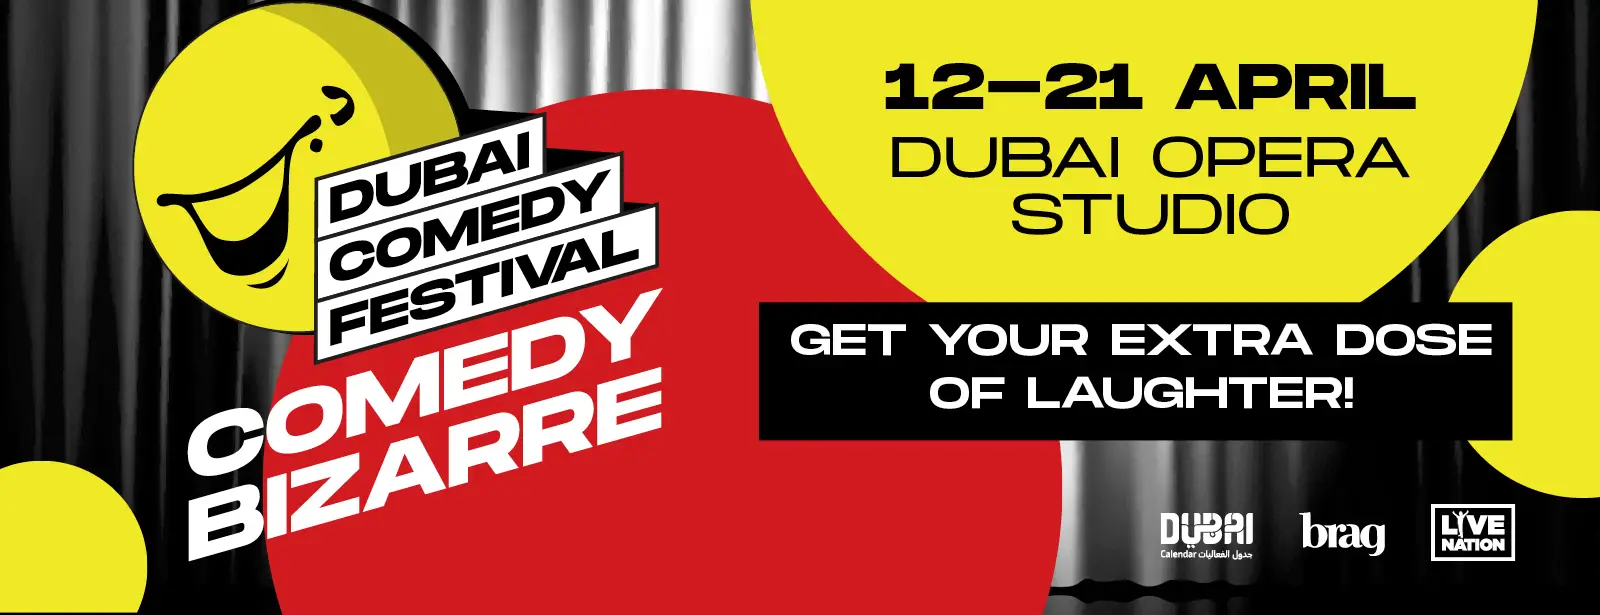 Comedy Bizarre at Dubai Opera Studio || Wow-Emirates